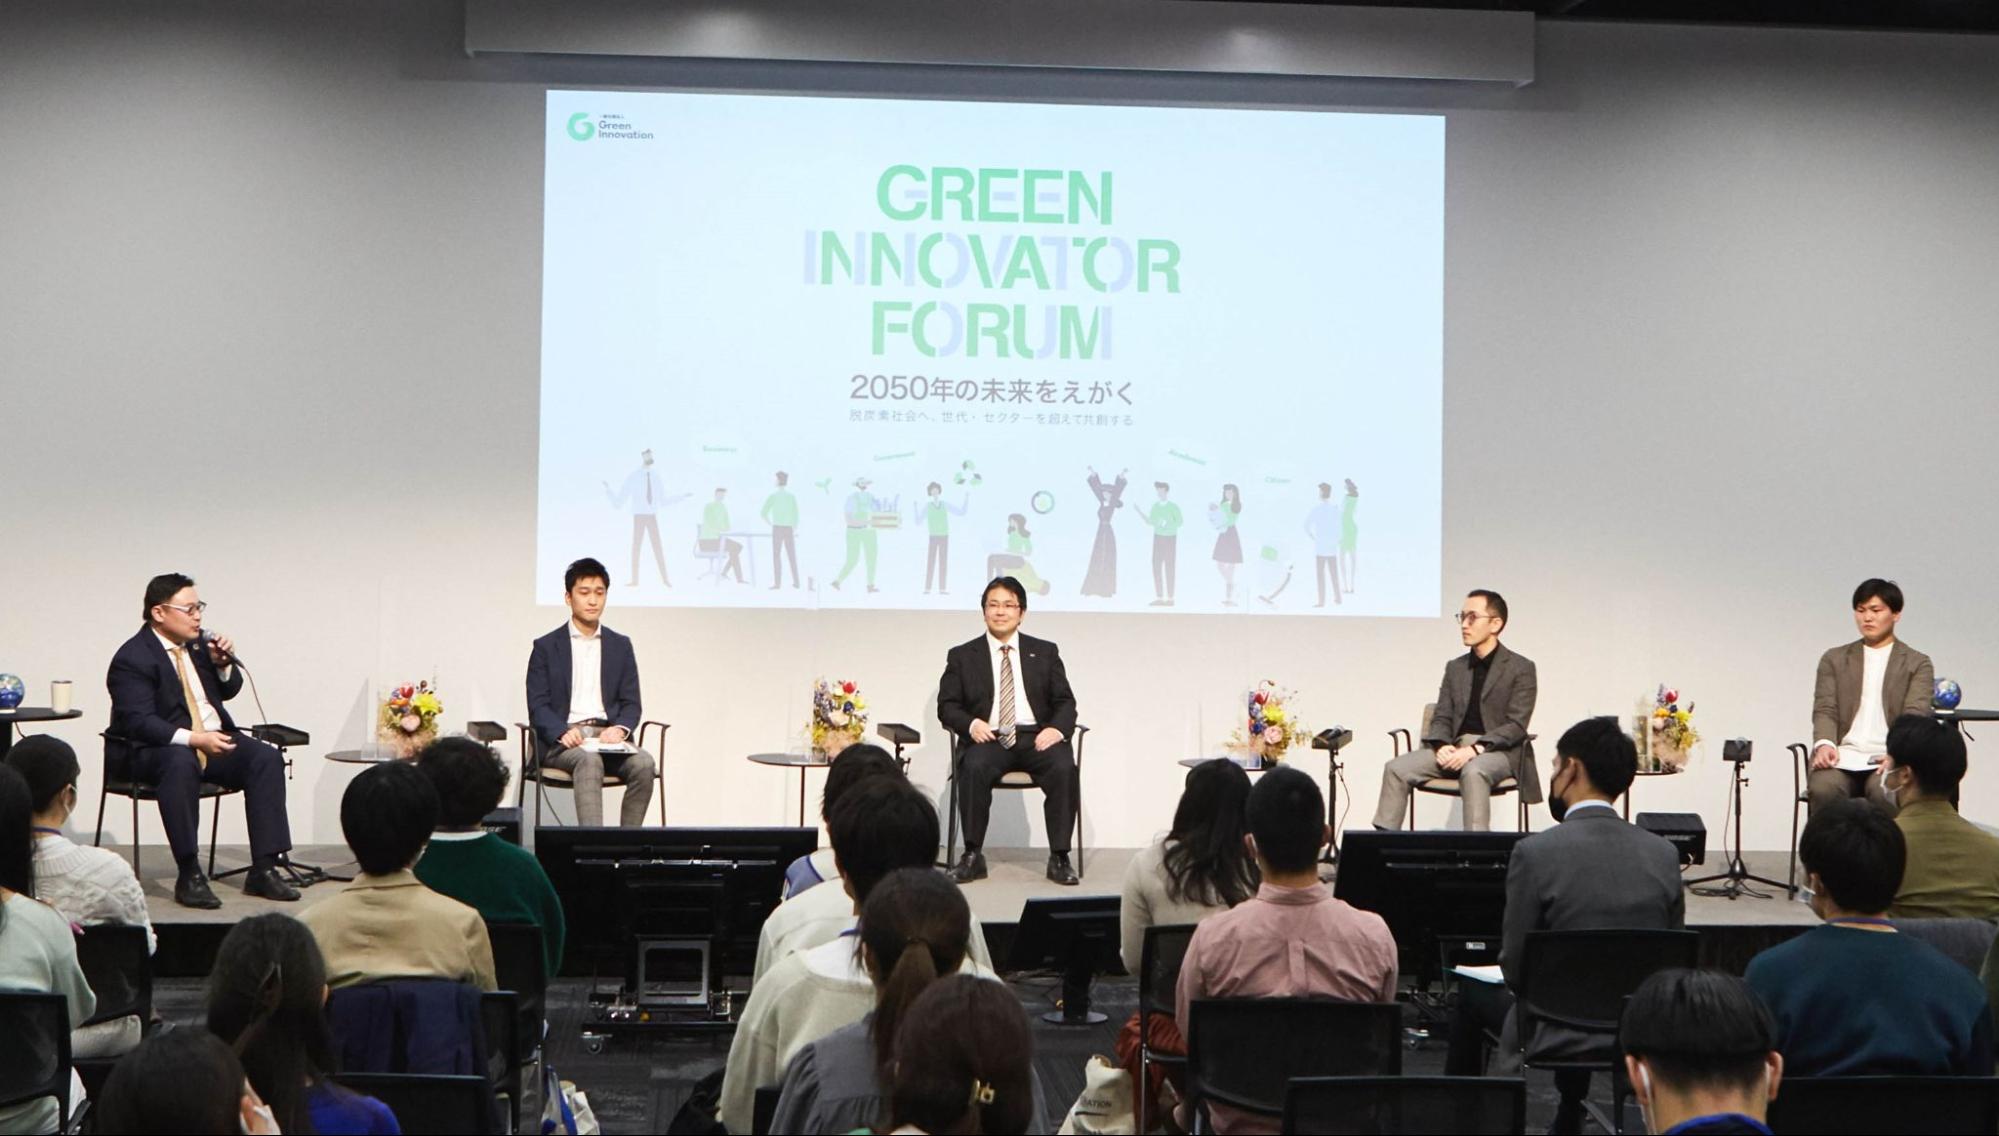 よりクリーンな世界へ 再エネ拡大に挑む -Rebuilding the History of Energy-新エネルギーへの取り組み-（Green Innovator Forum セッションレポート）